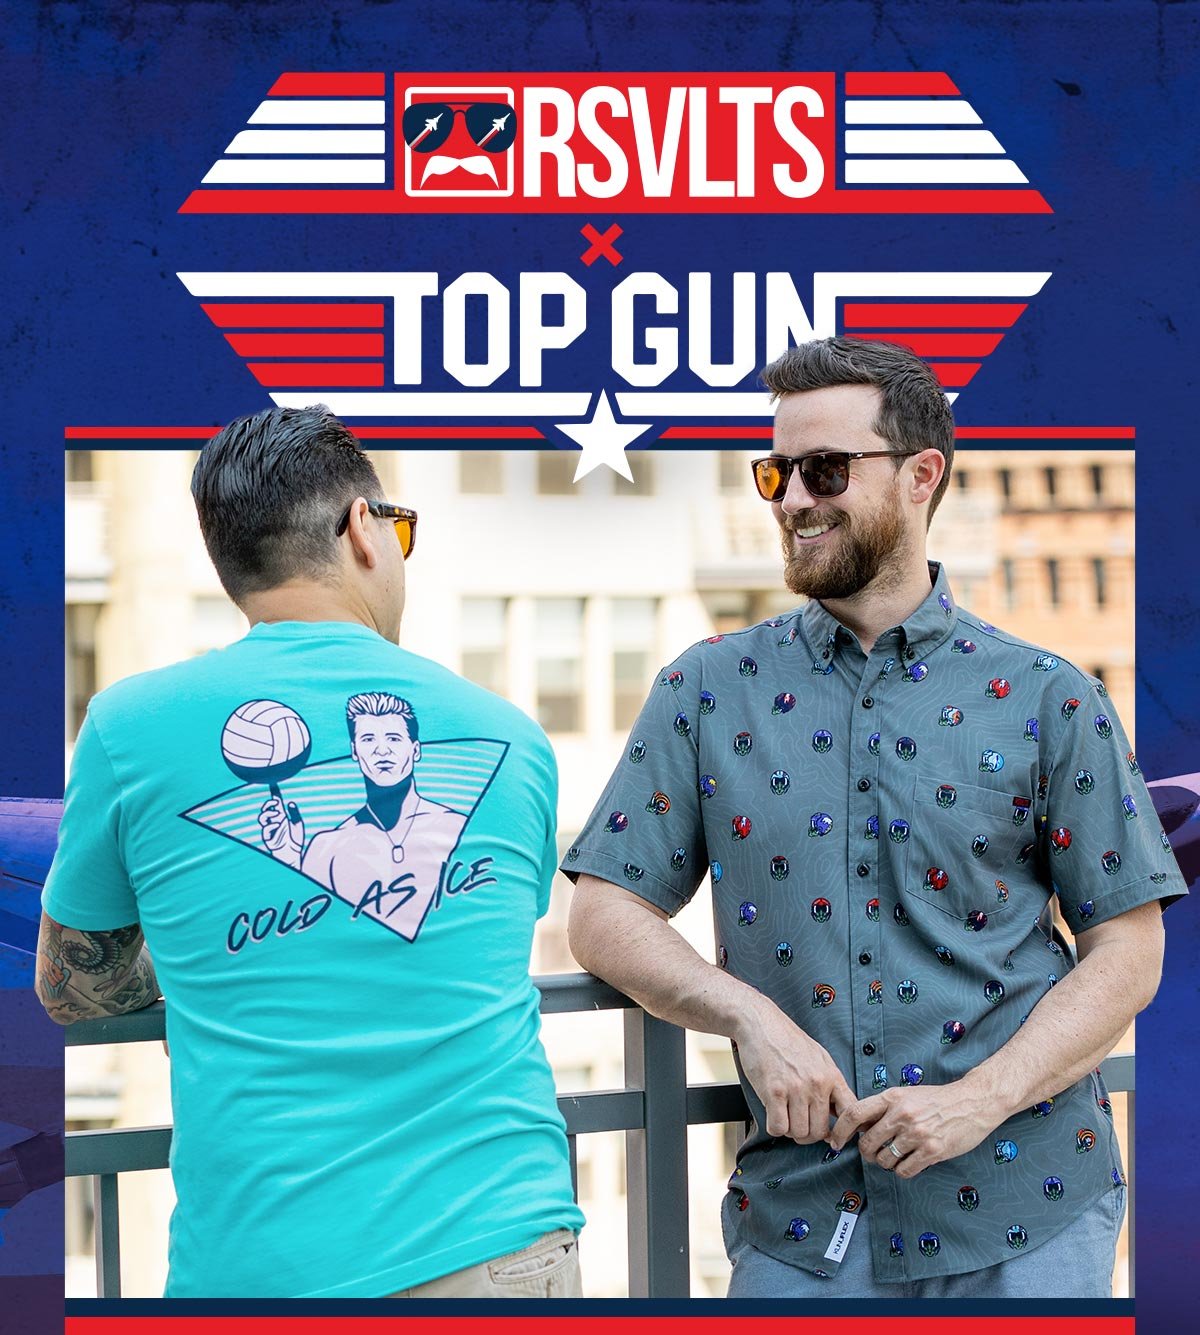 RSVLTS: NEW, Top Gun x RSVLTS!